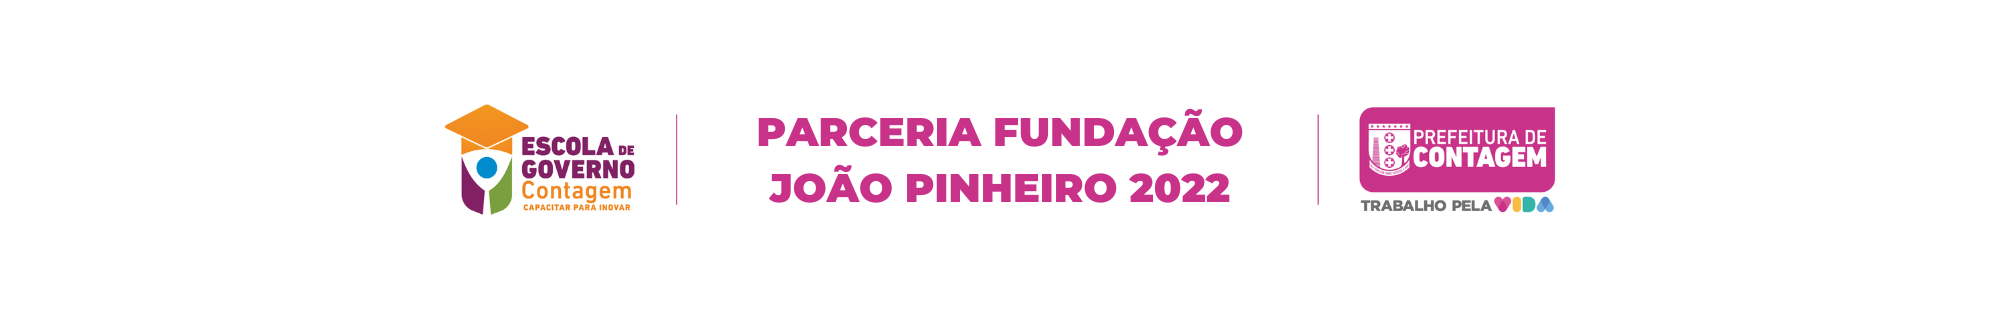 parceria fundação João pinheiro 2022